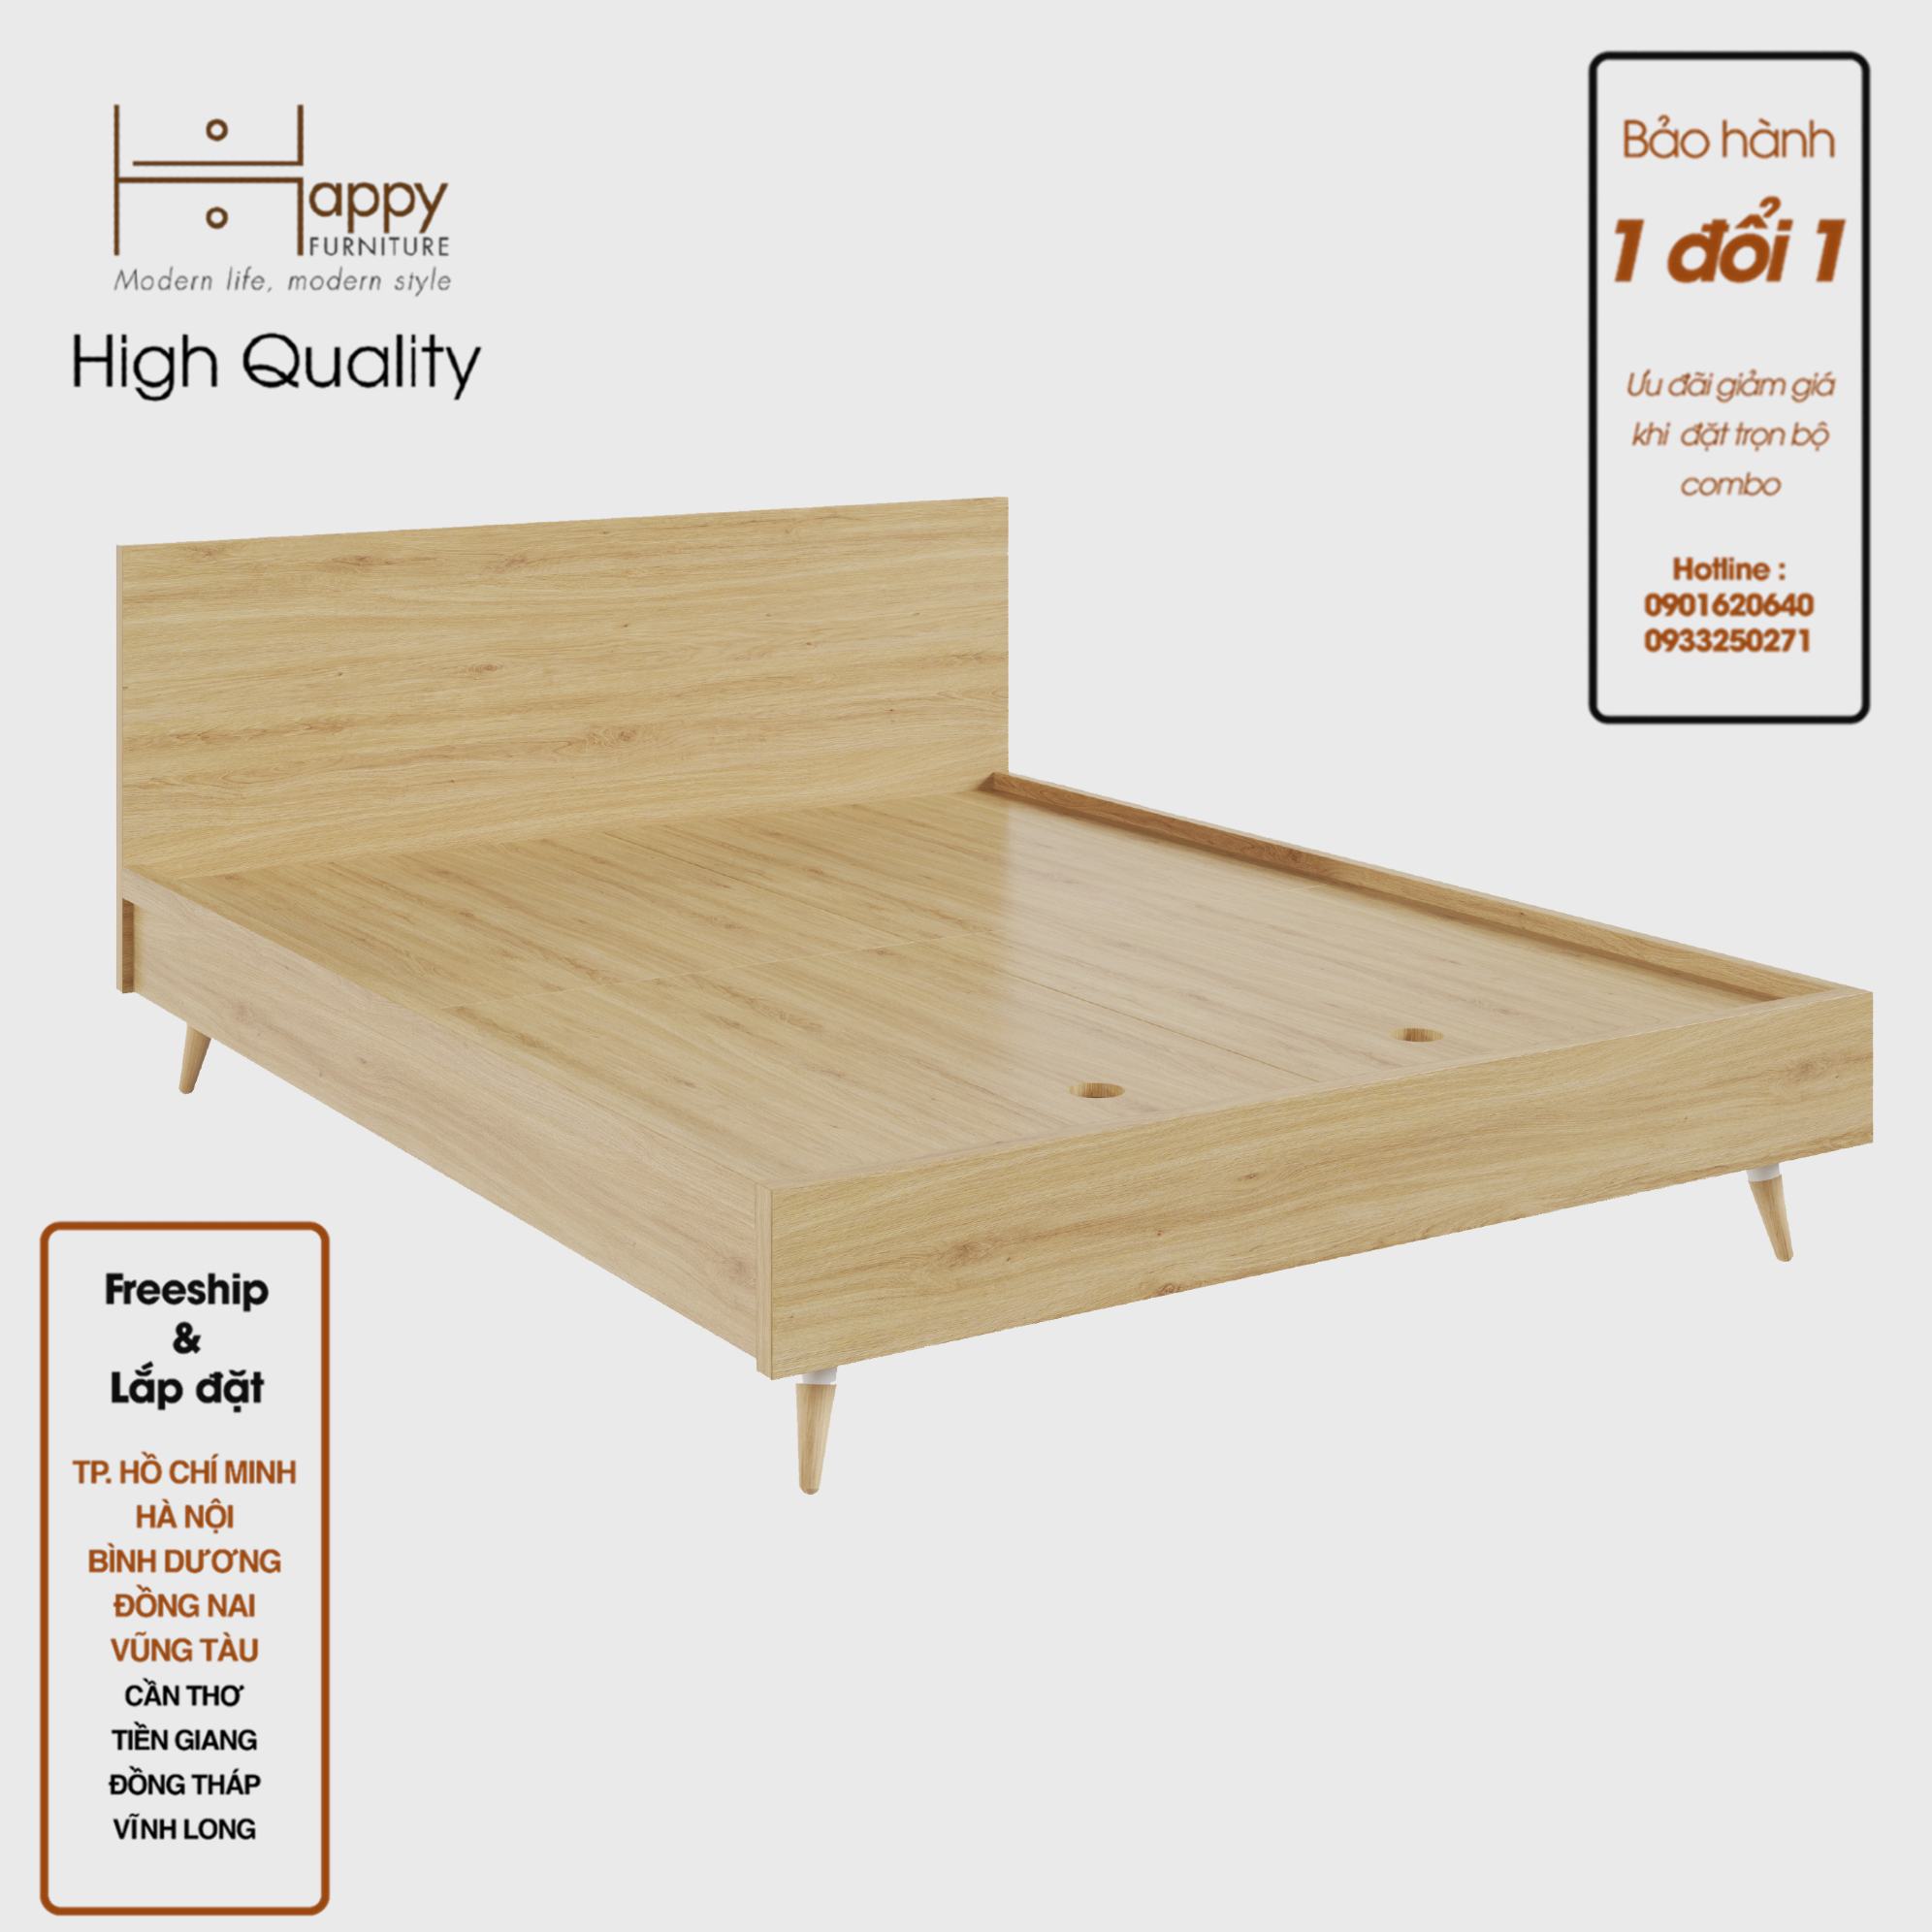 [Happy Home Furniture]  OSRI, Giường ngủ chân gỗ chéo ( chống ẩm cao cấp), GNG_025, GNG_026, GNG_027